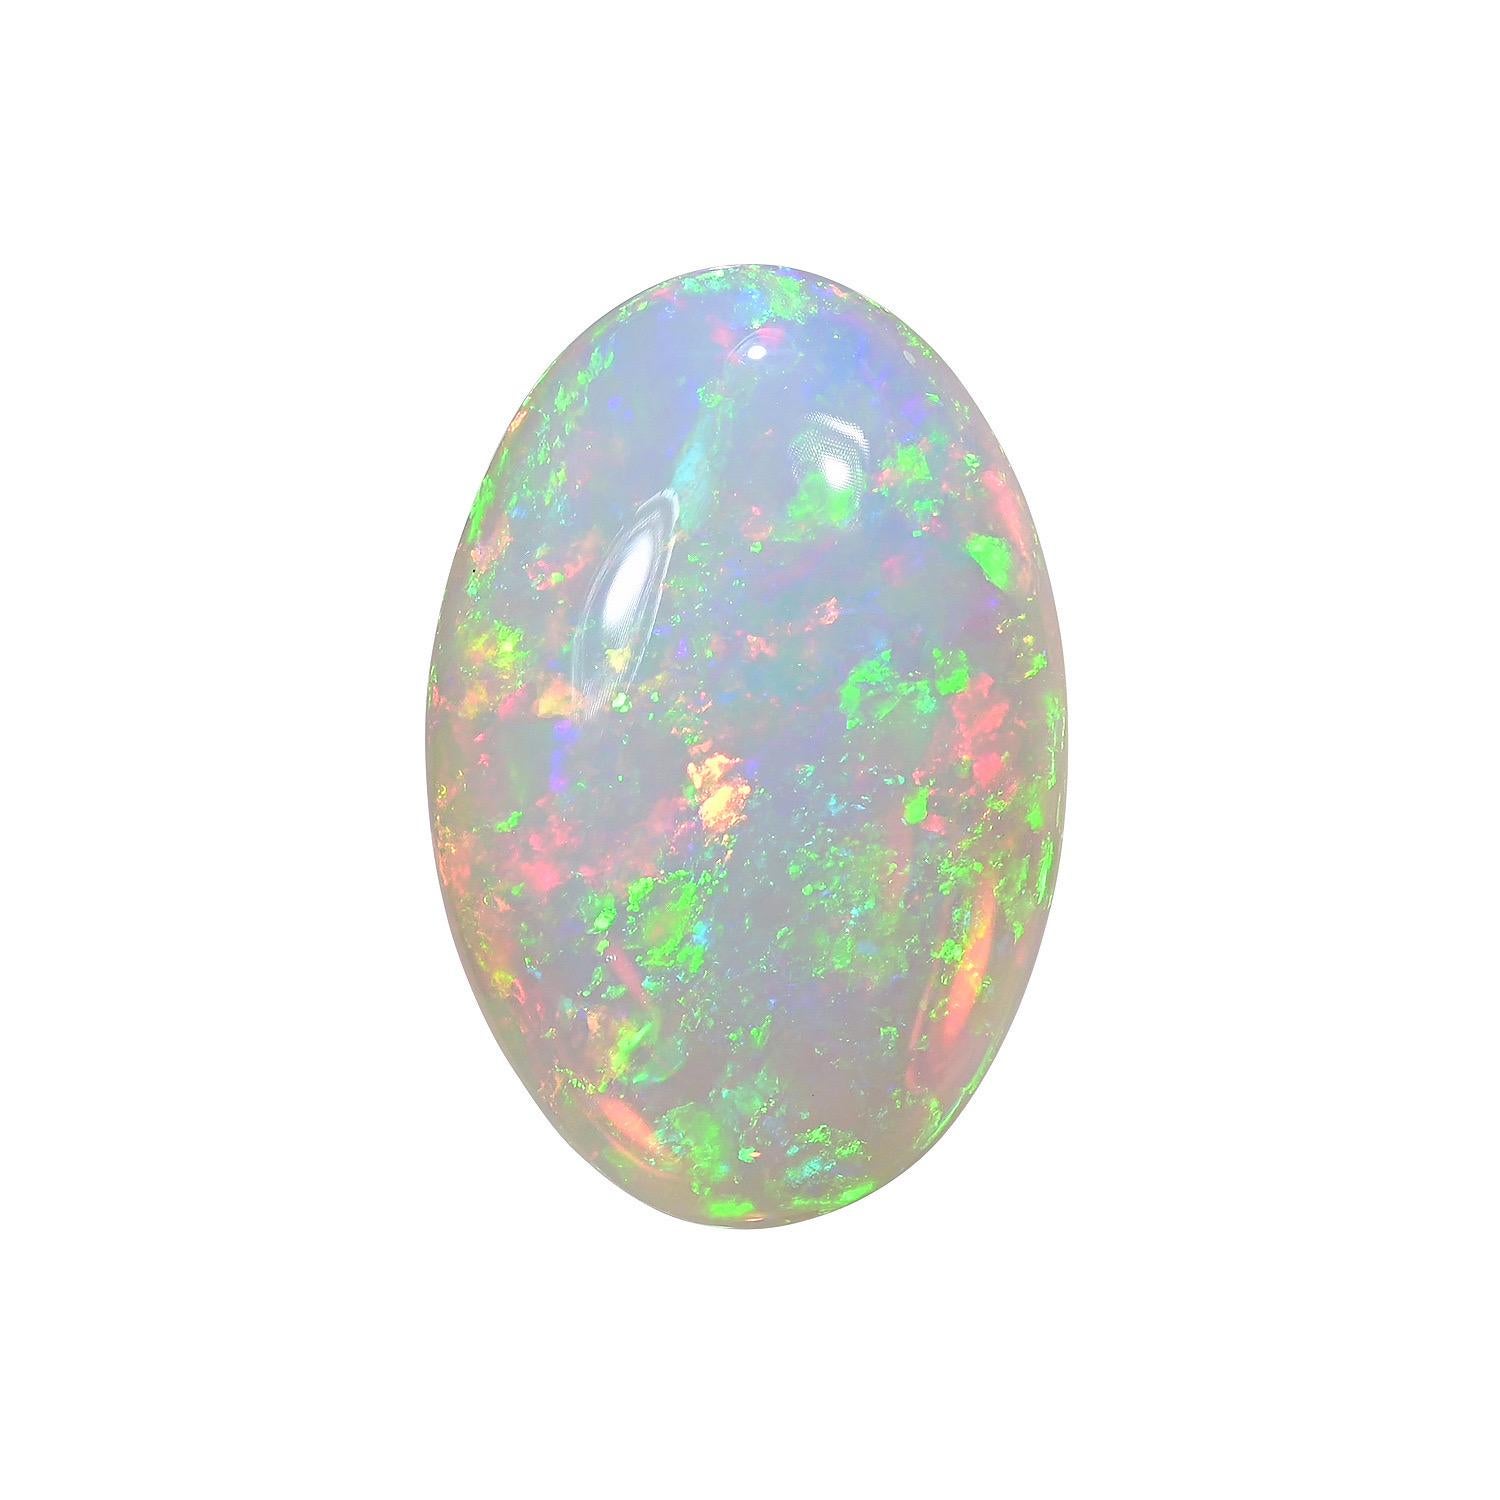 Opale d'Éthiopie naturelle ovale de 22,20 carats, offerte non montée à quelqu'un de spécial.
Les retours sont acceptés et pris en charge dans les sept jours suivant la livraison.
Nous offrons d'excellents travaux de bijouterie sur mesure sur